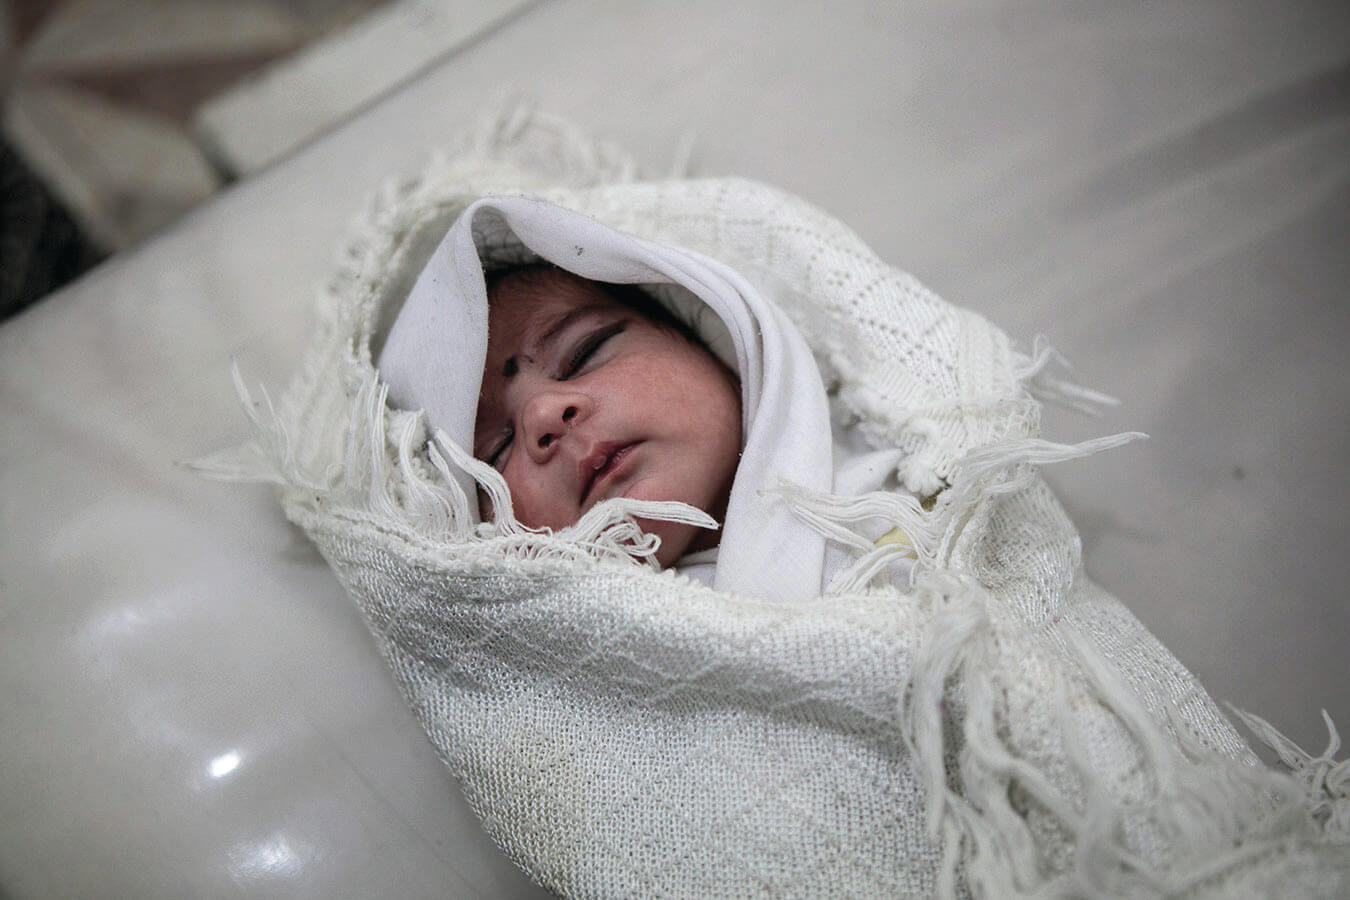 afghanistan-midwives-hero-24102019_CMYK.jpg